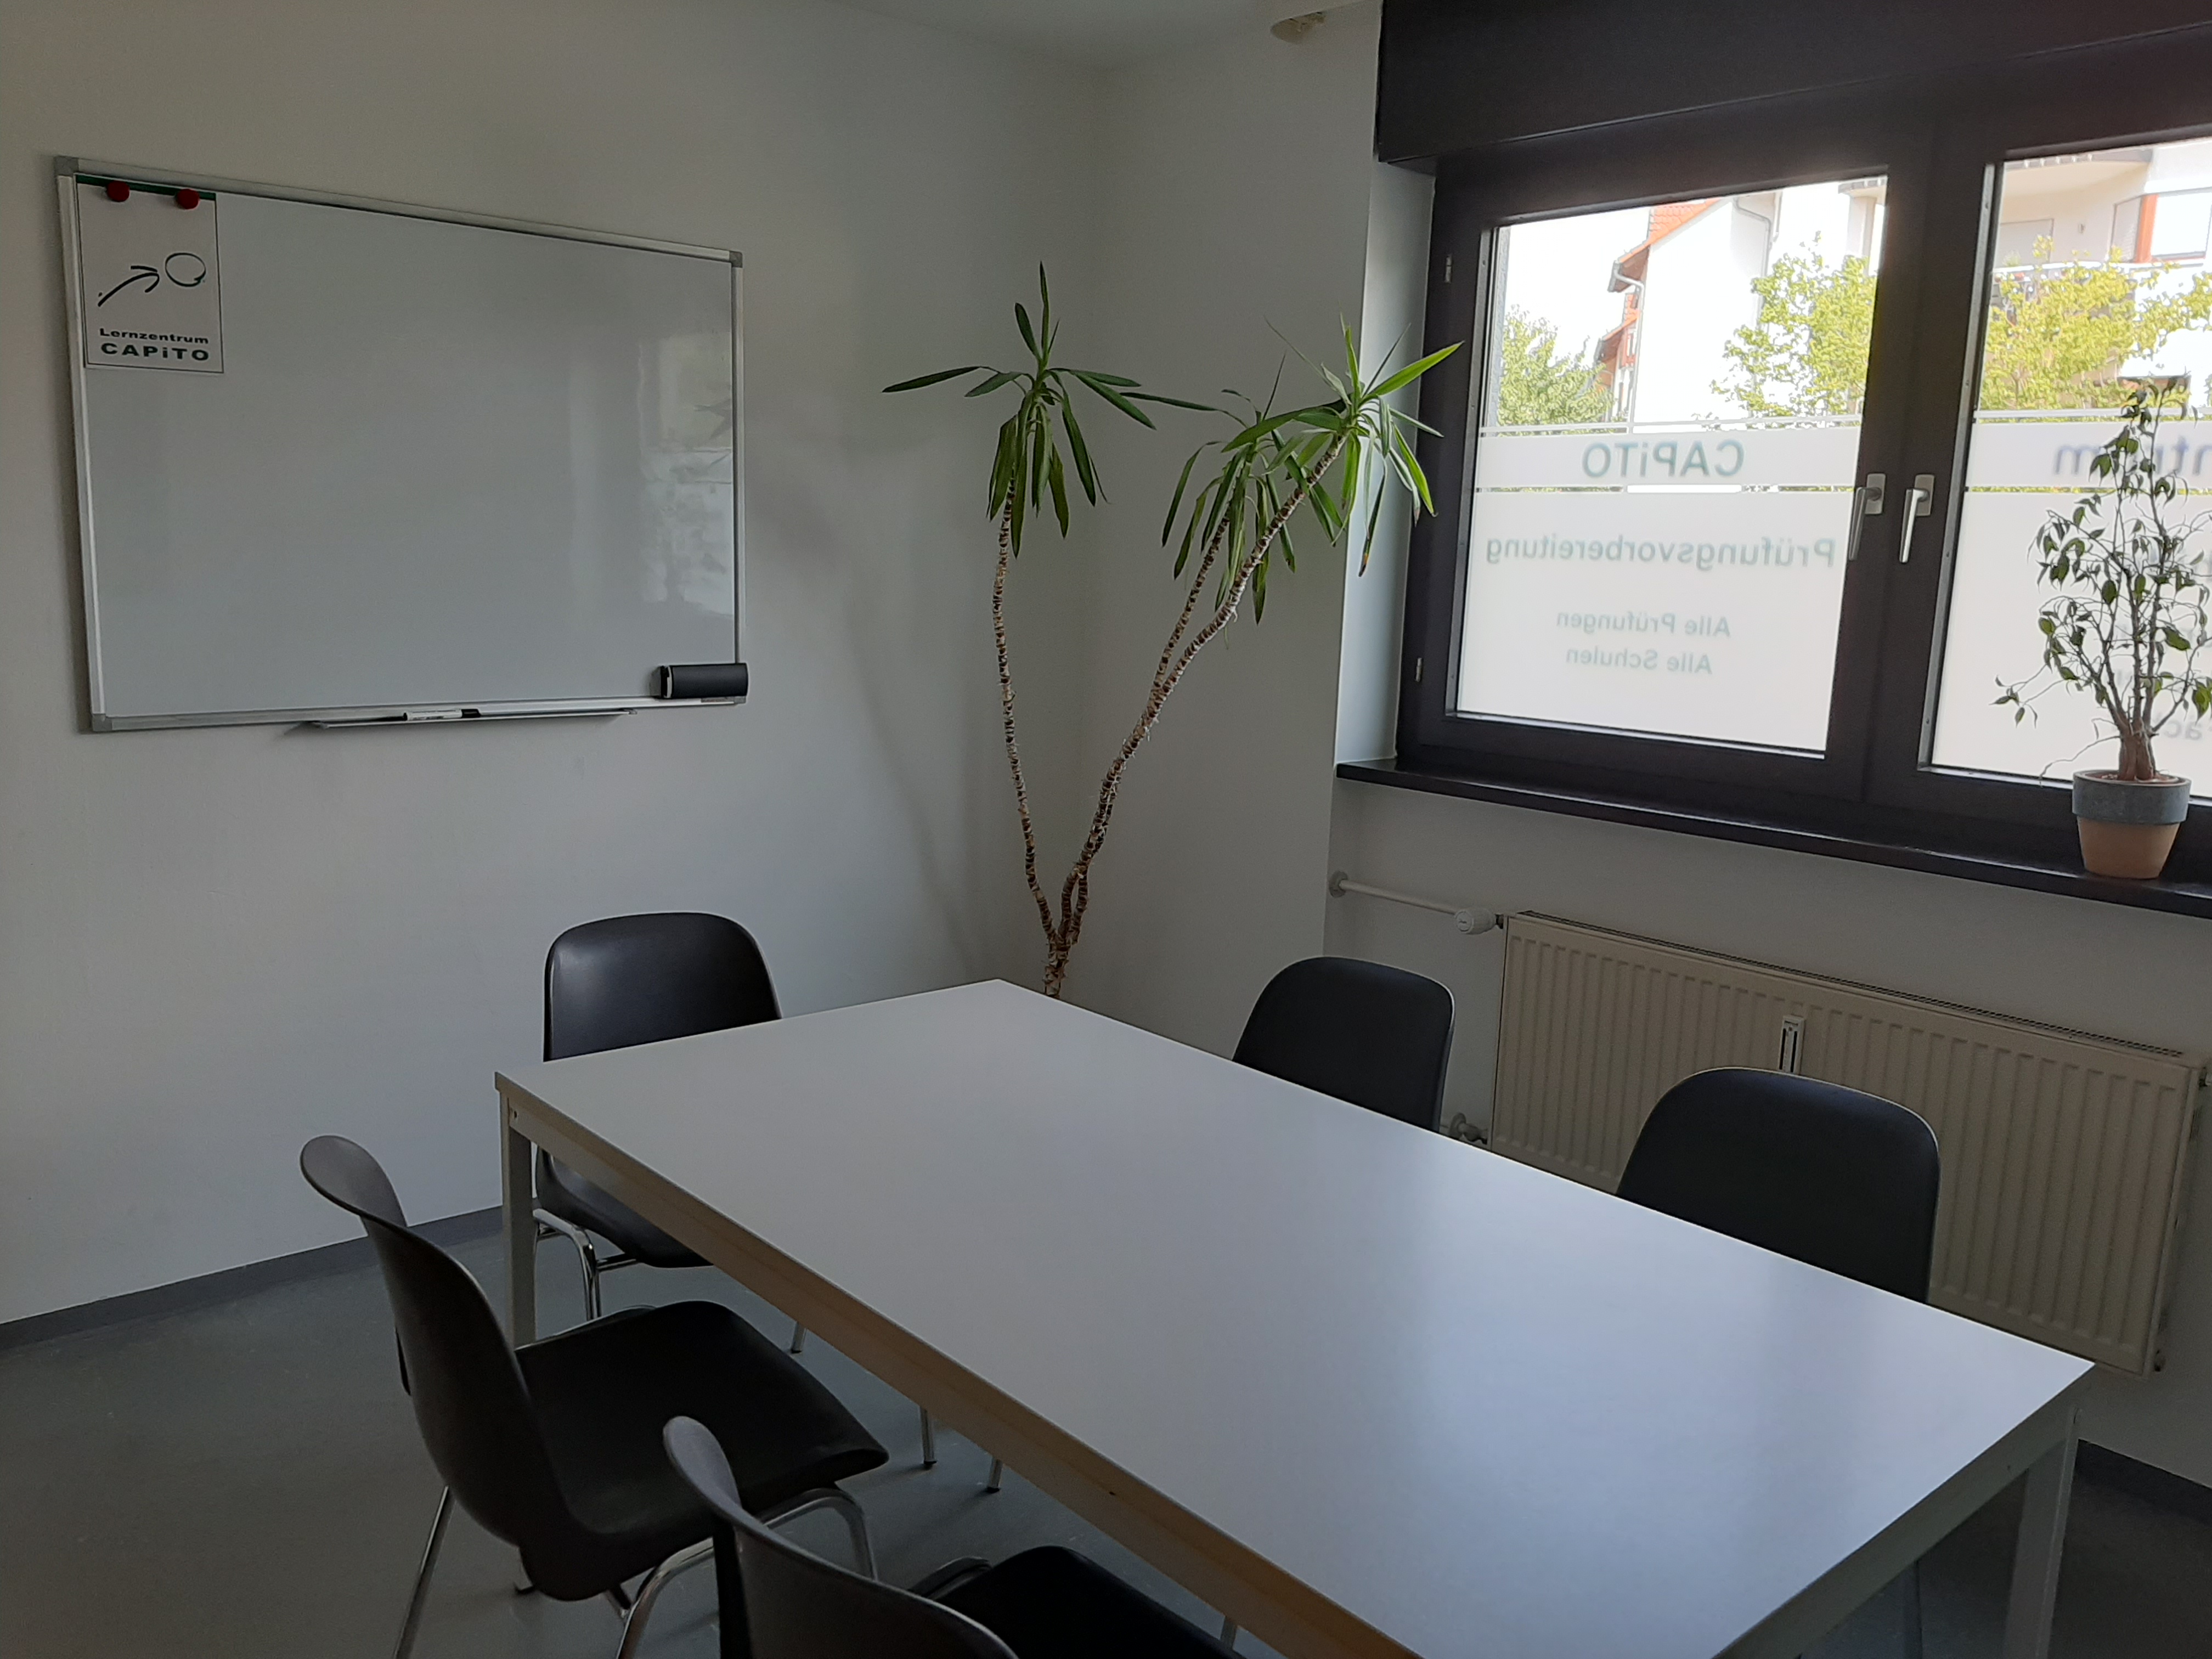 Schulungsraum mit Tisch und Stühlen sowie Whiteboard